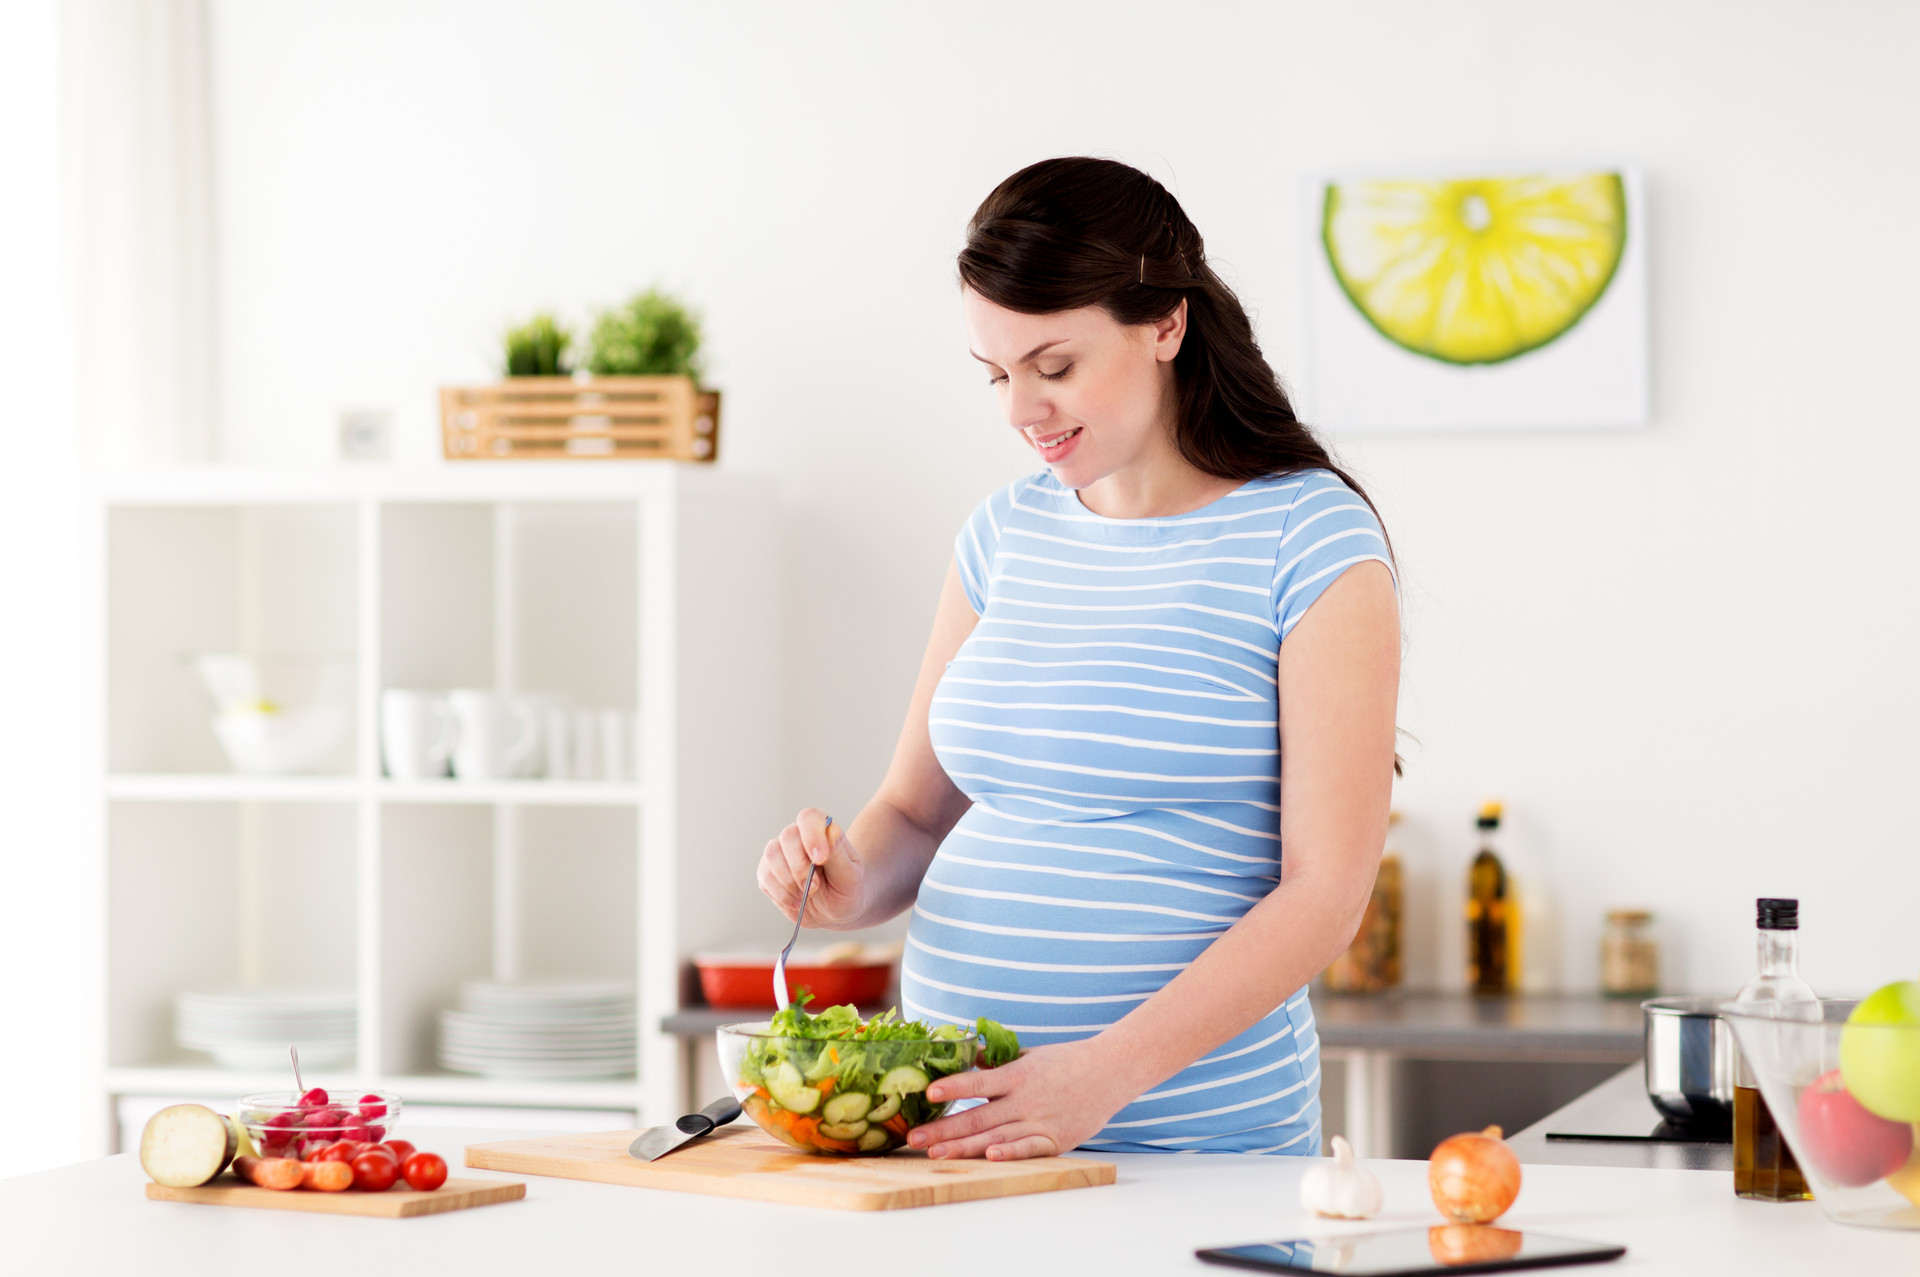 孕妇食物素材-孕妇食物图片-孕妇食物素材图片下载-觅知网